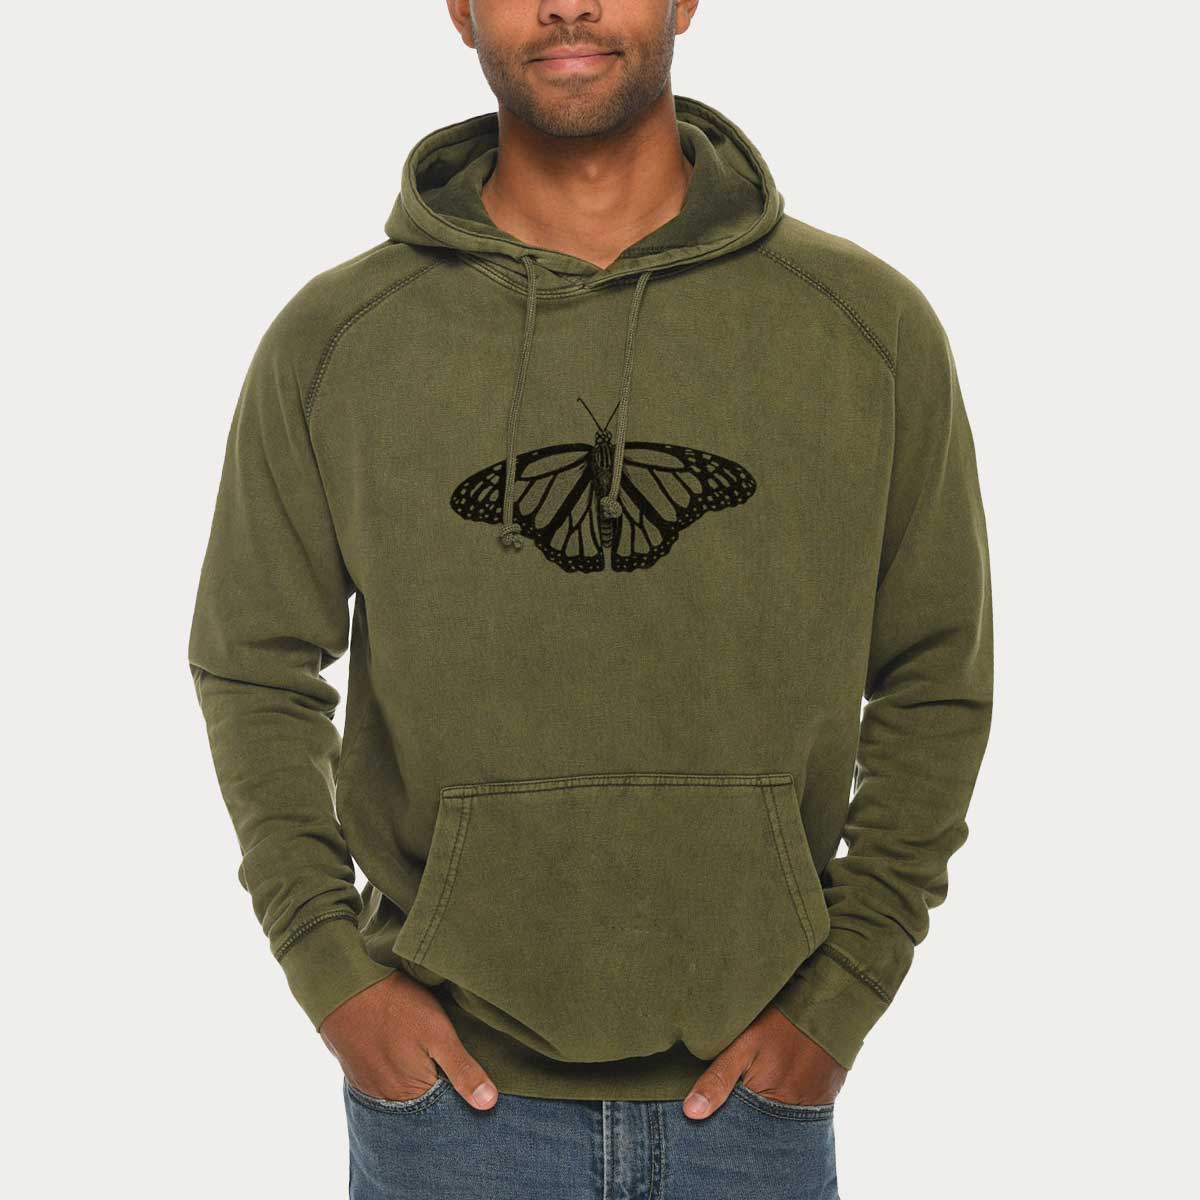 Danaus plexippus - Monarch Butterfly  - Mid-Weight Unisex Vintage 100% Cotton Hoodie